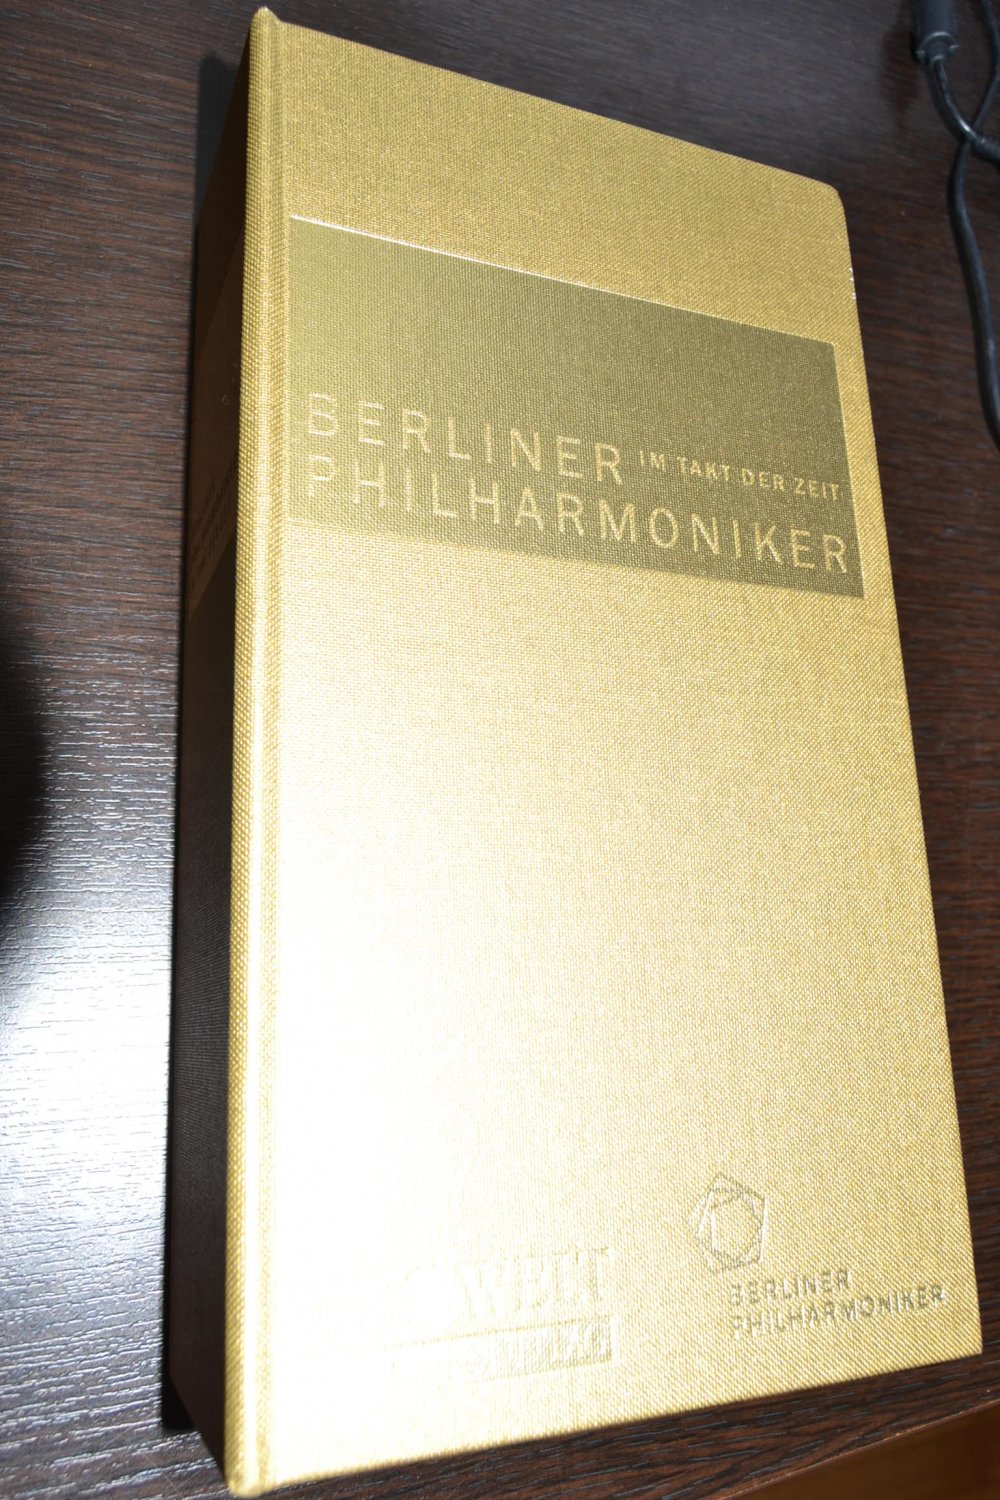 Im Takt der Zeit - BERLINER PHILHARMONIKER“ (Berliner ...